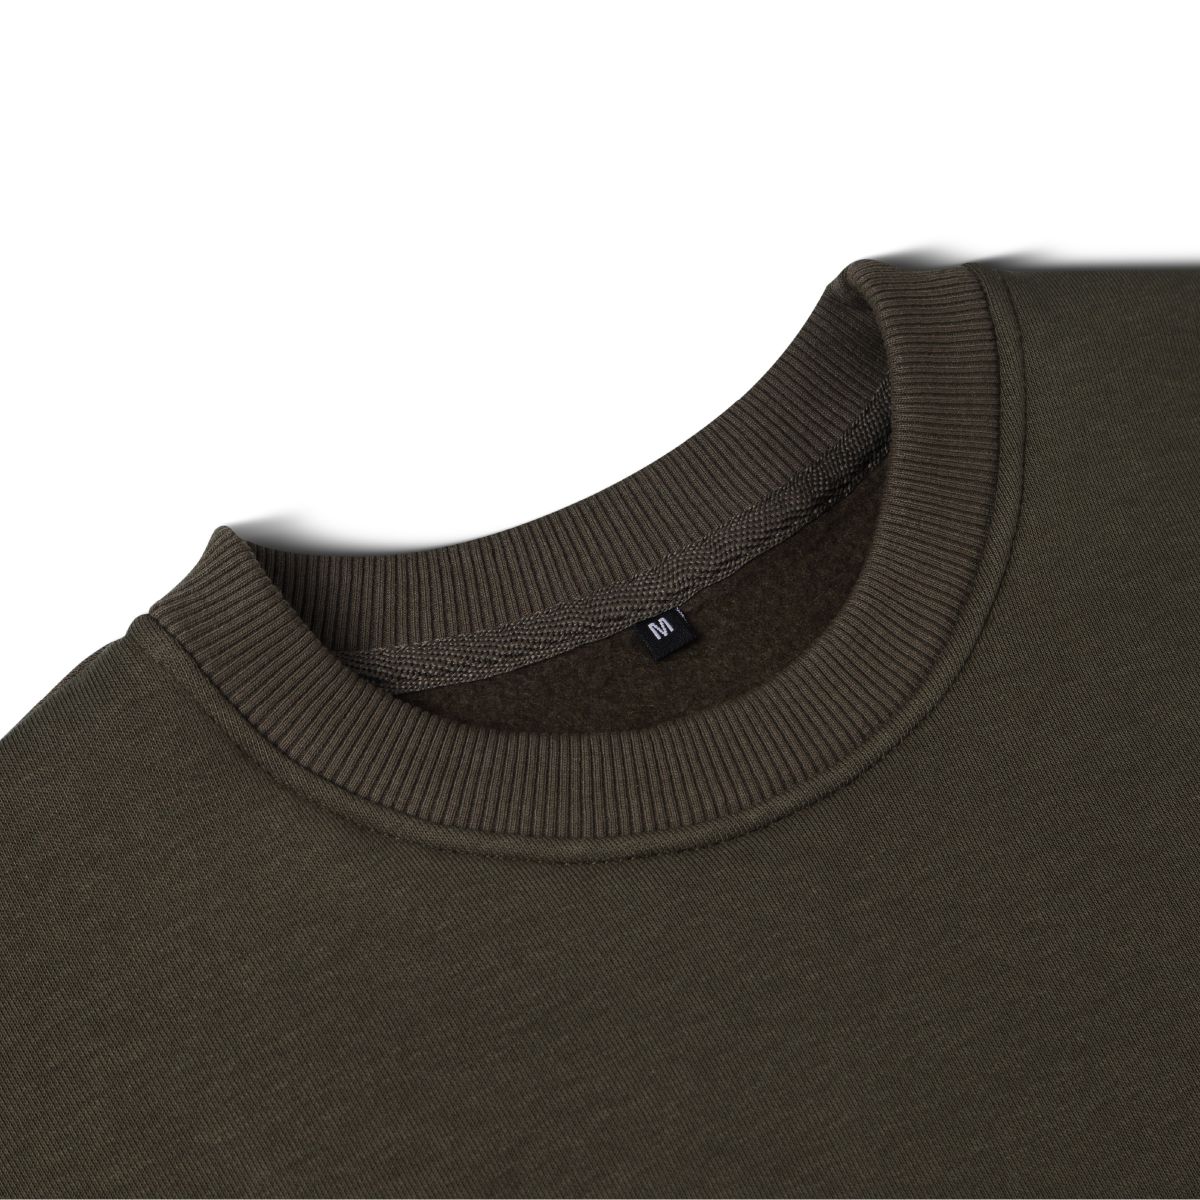 Світшот Base Soft Sweatshirt Olive. Вільний стиль. S 4